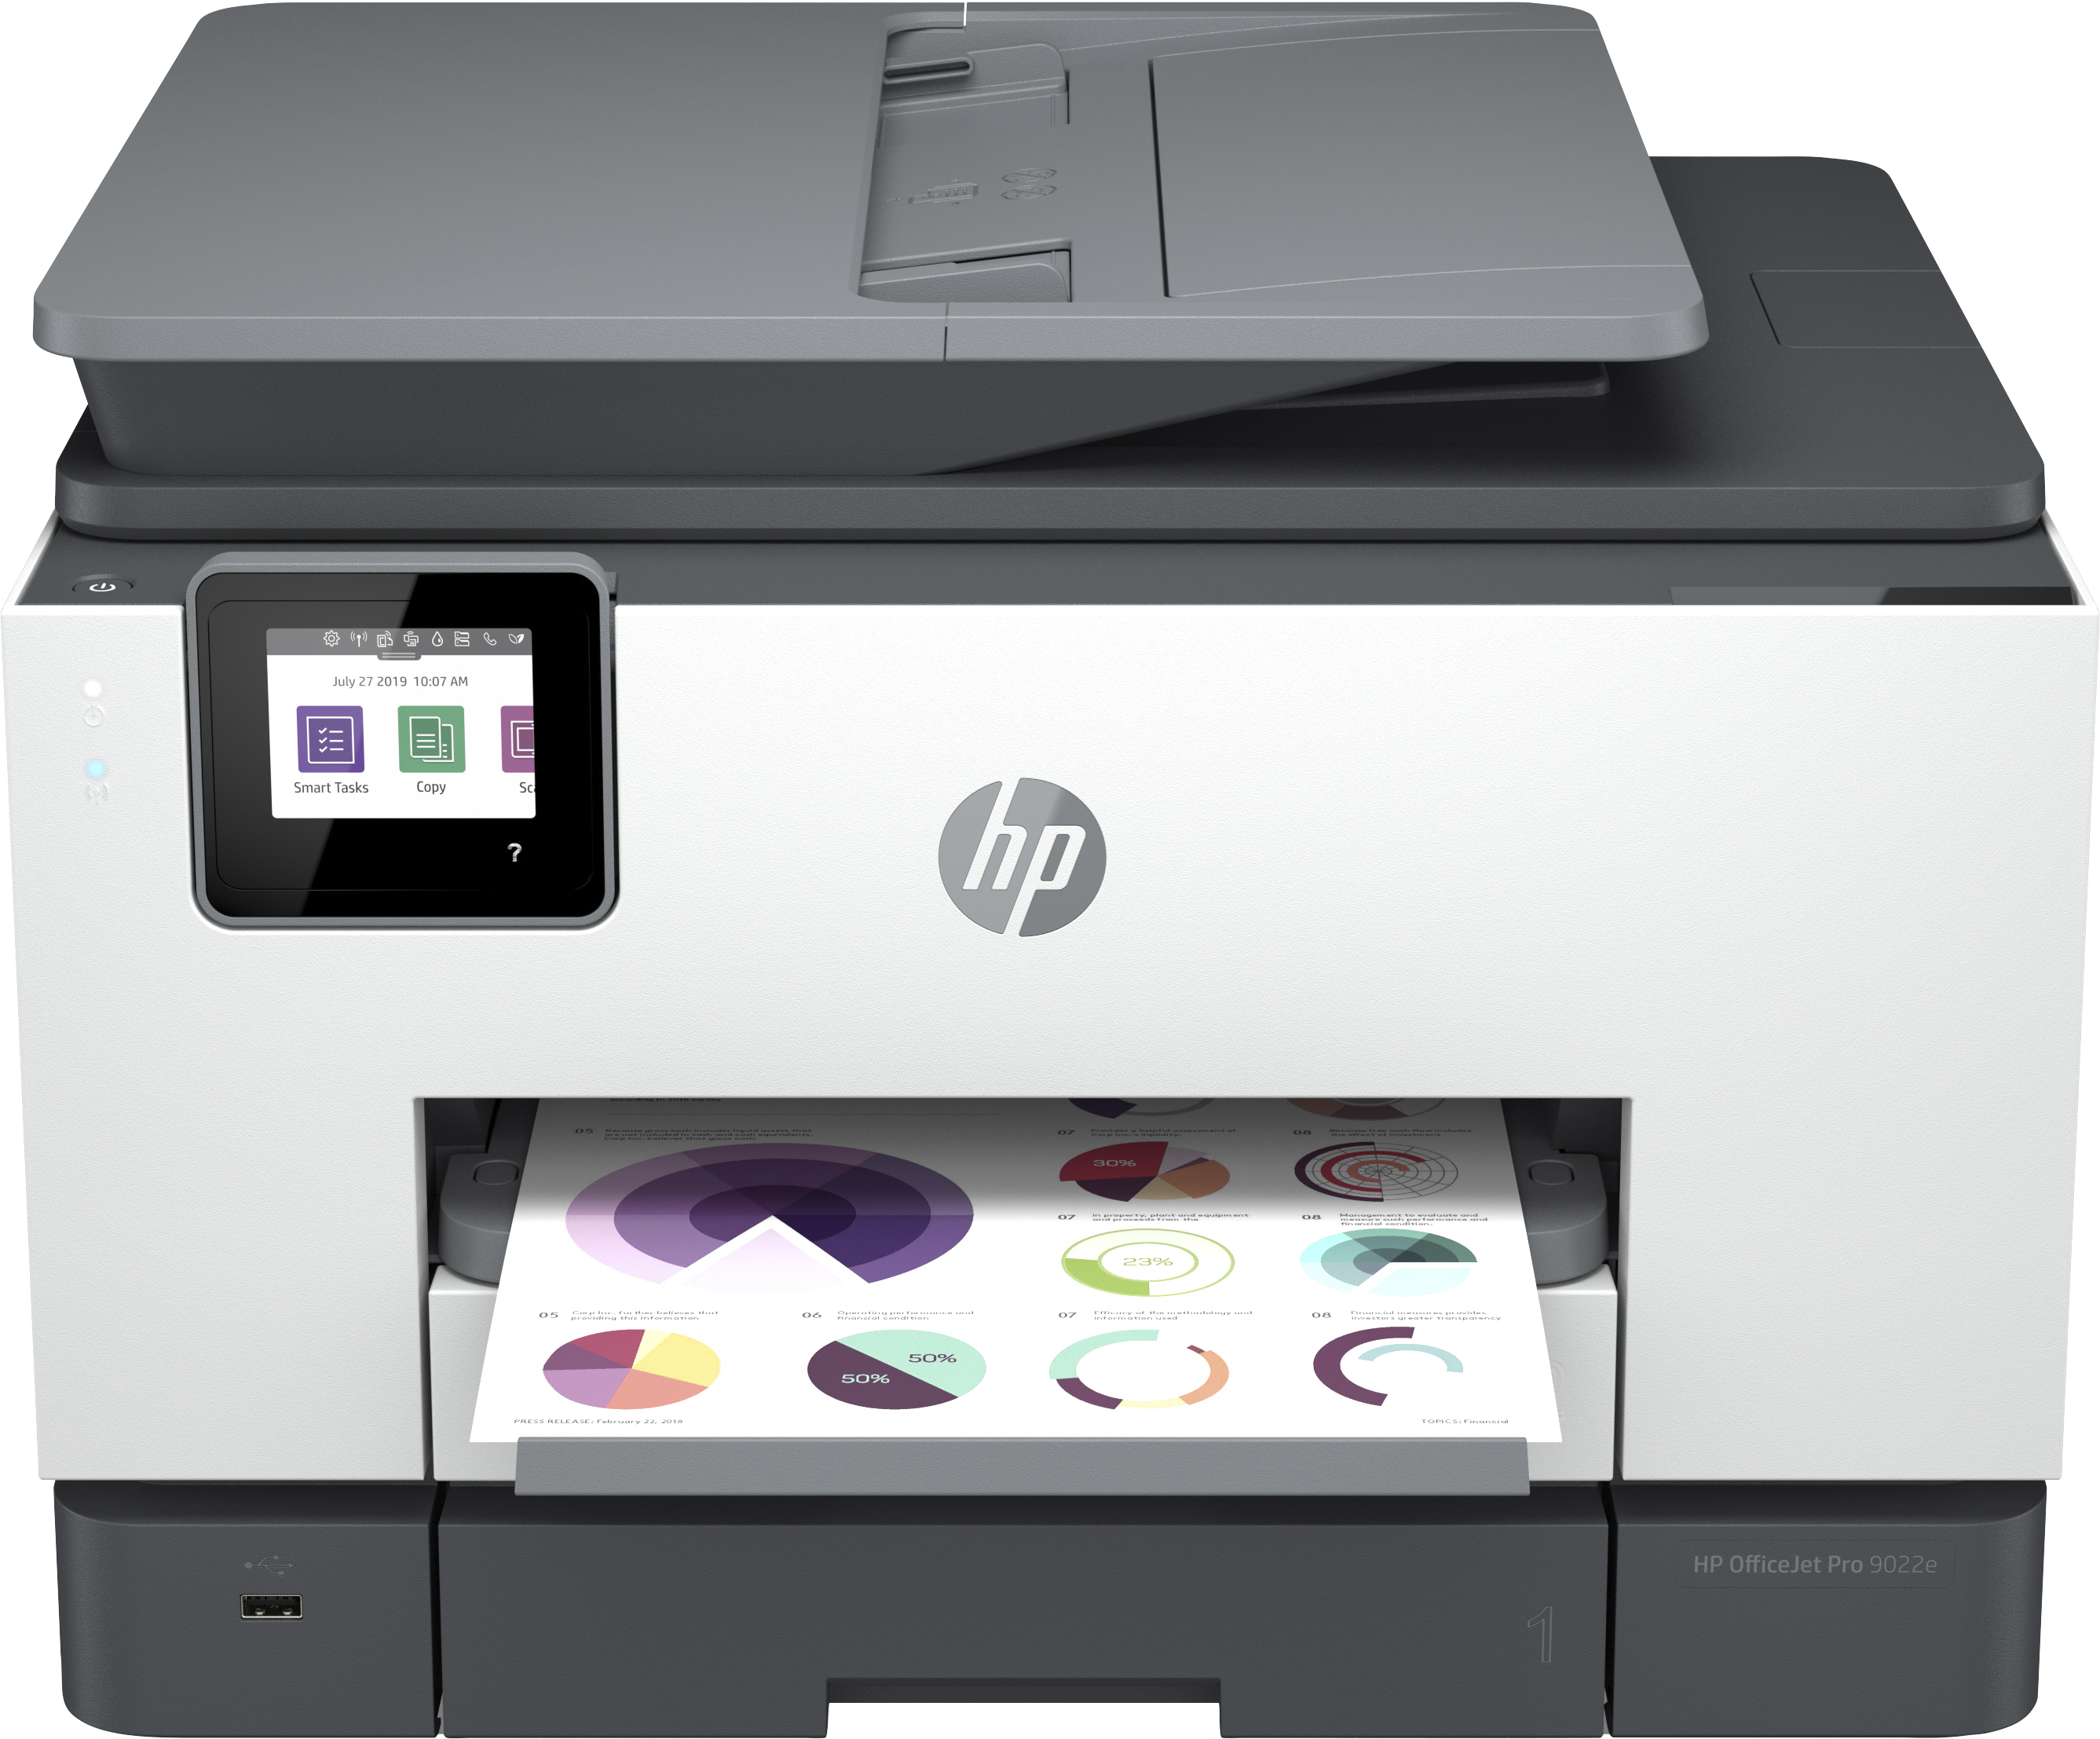 Image of HP OfficeJet Pro Stampante multifunzione HP 9022e, Colore, Stampante per Piccoli uffici, Stampa, copia, scansione, fax, HP+; Idoneo per HP Instant Ink; alimentatore automatico di documenti; Stampa fronte/retro